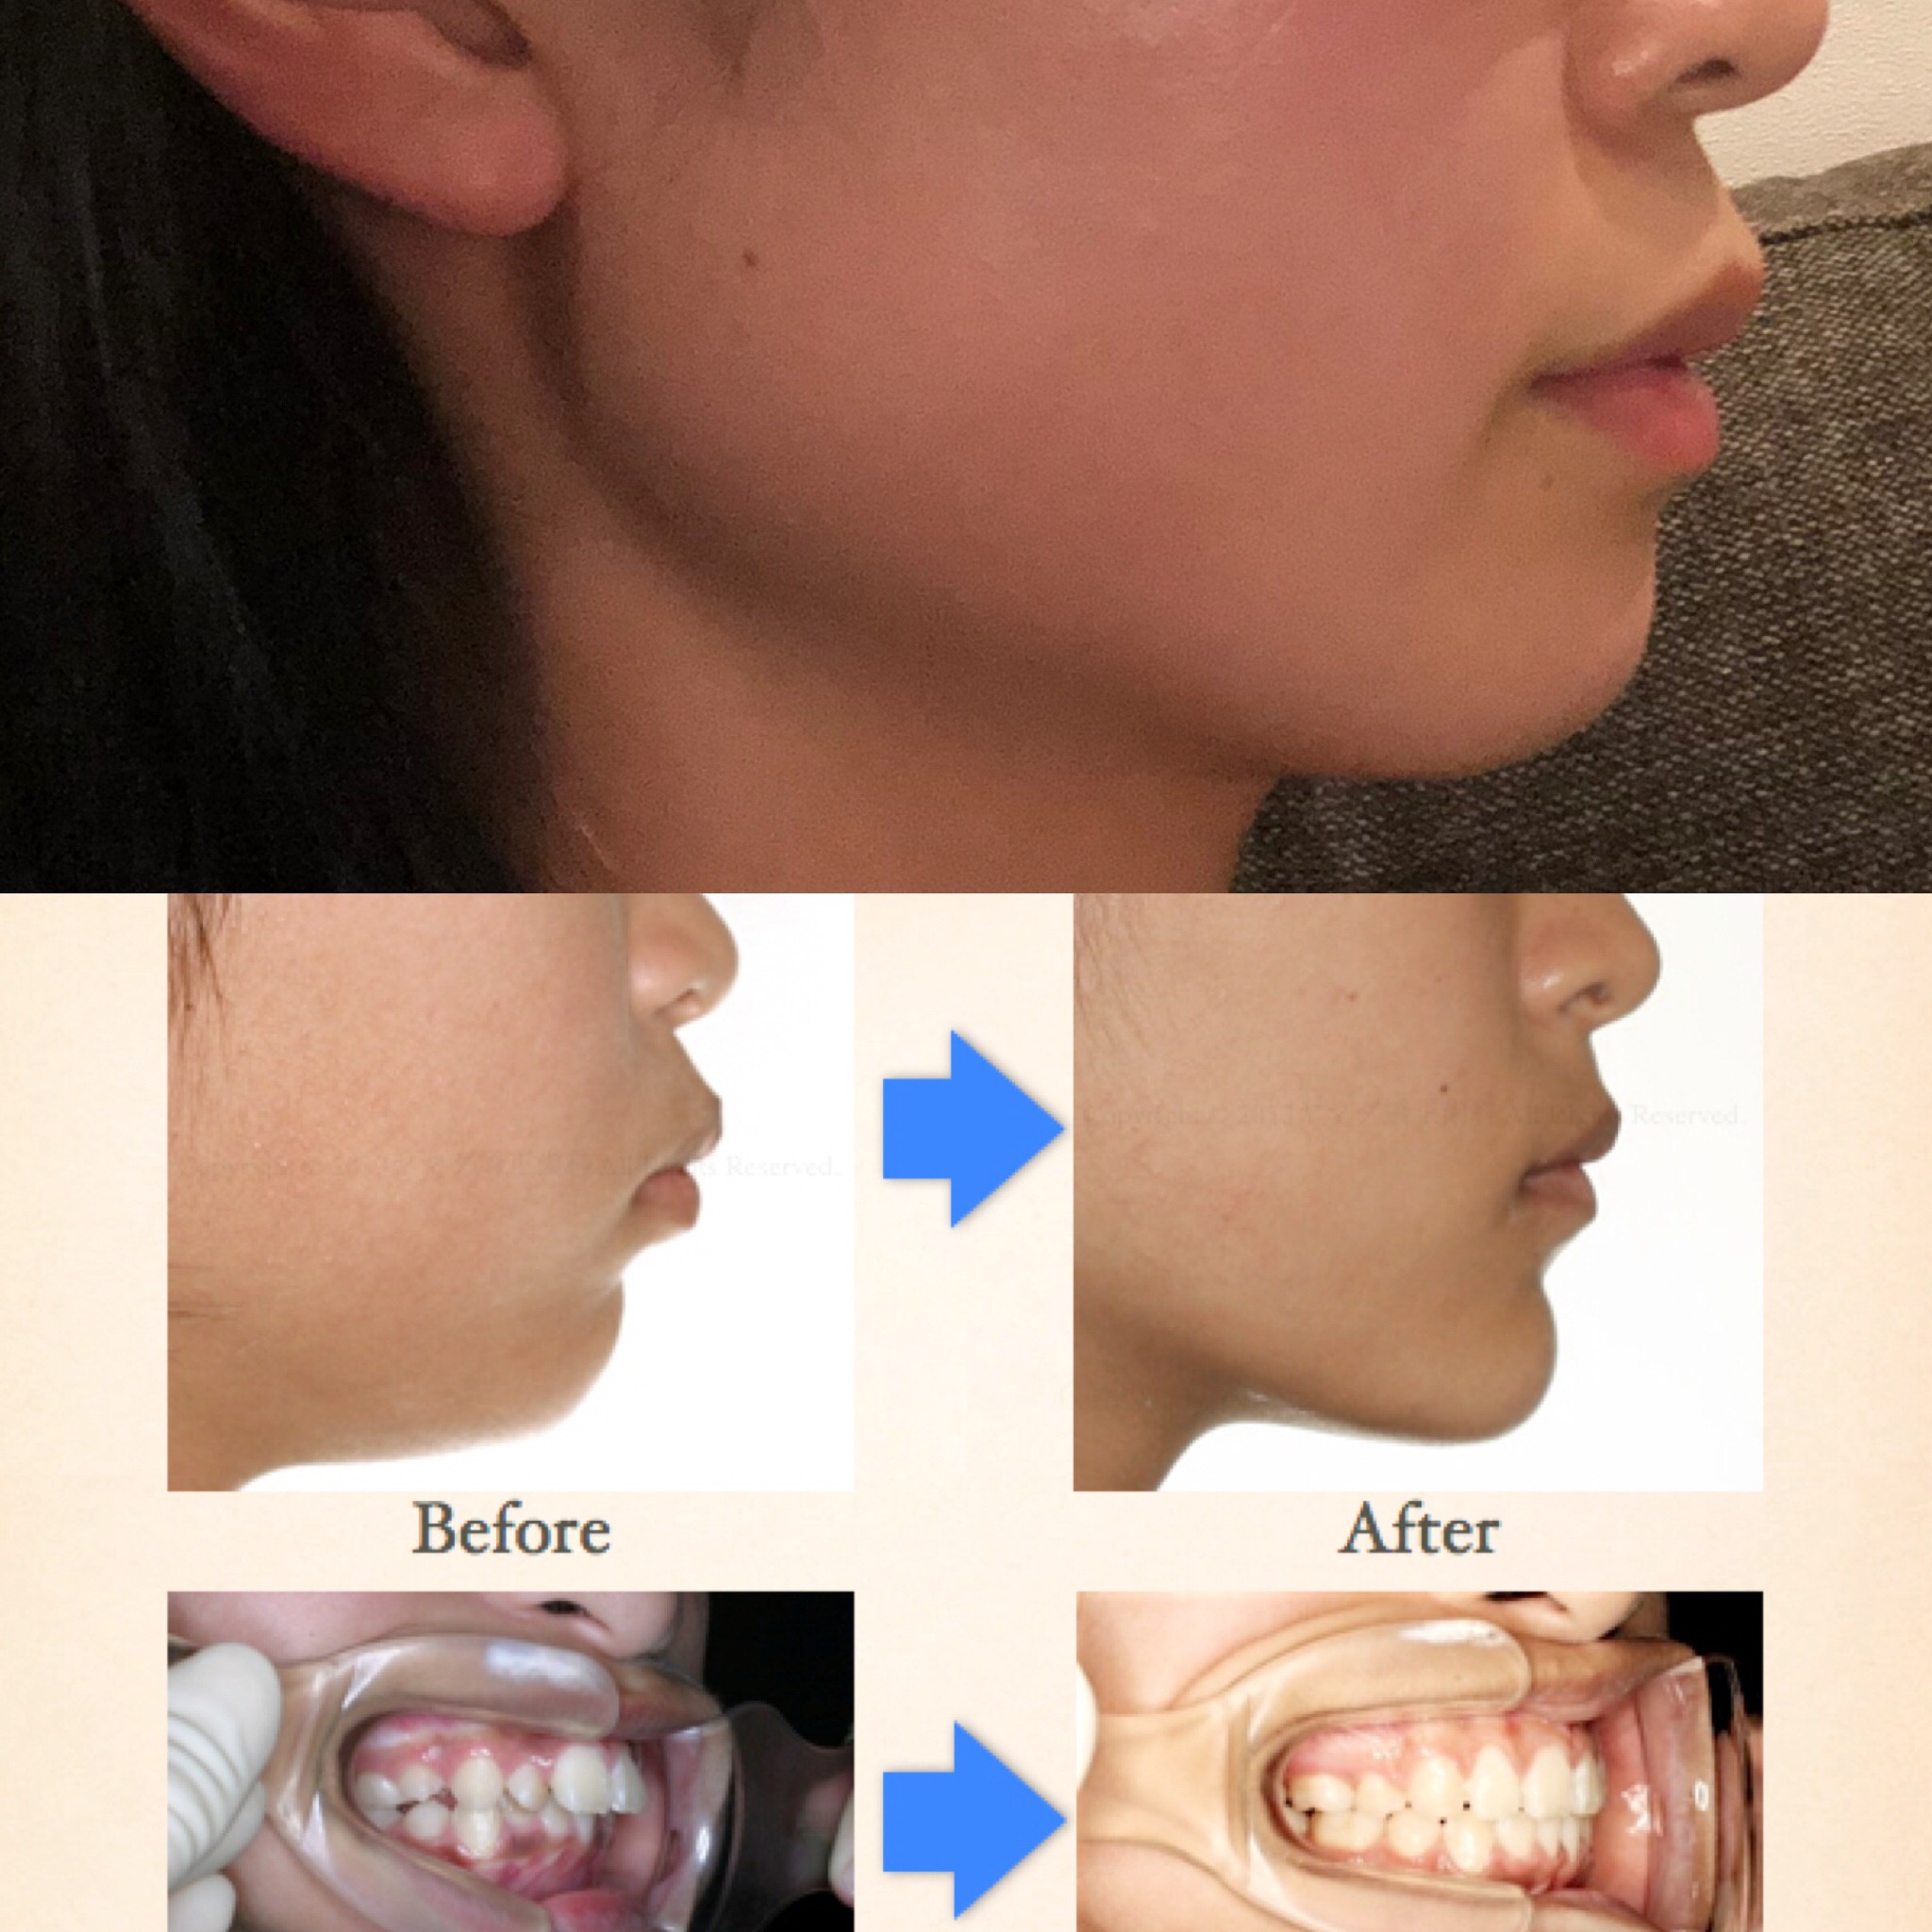 写真あり 上下顎前突気味 歯列矯正での横顔の変化について 歯チャンネル歯科相談室